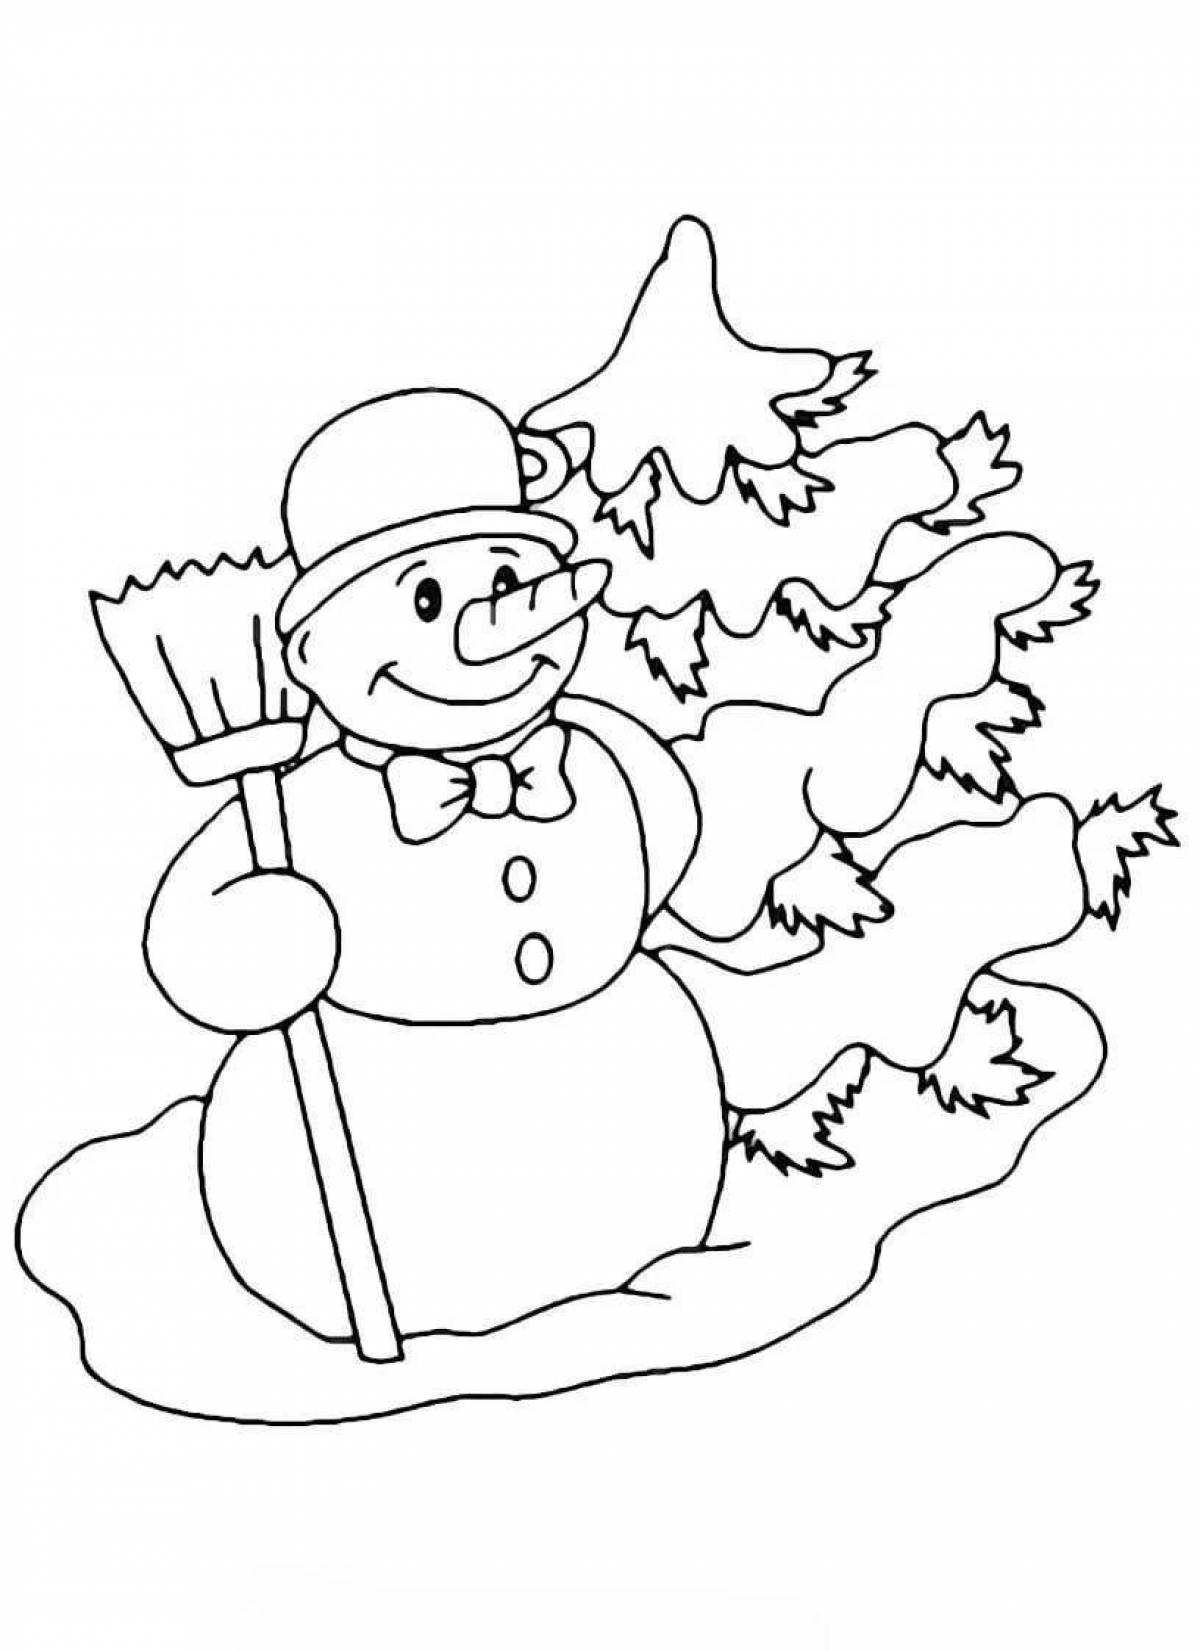 Coloring page joyful children's snowman